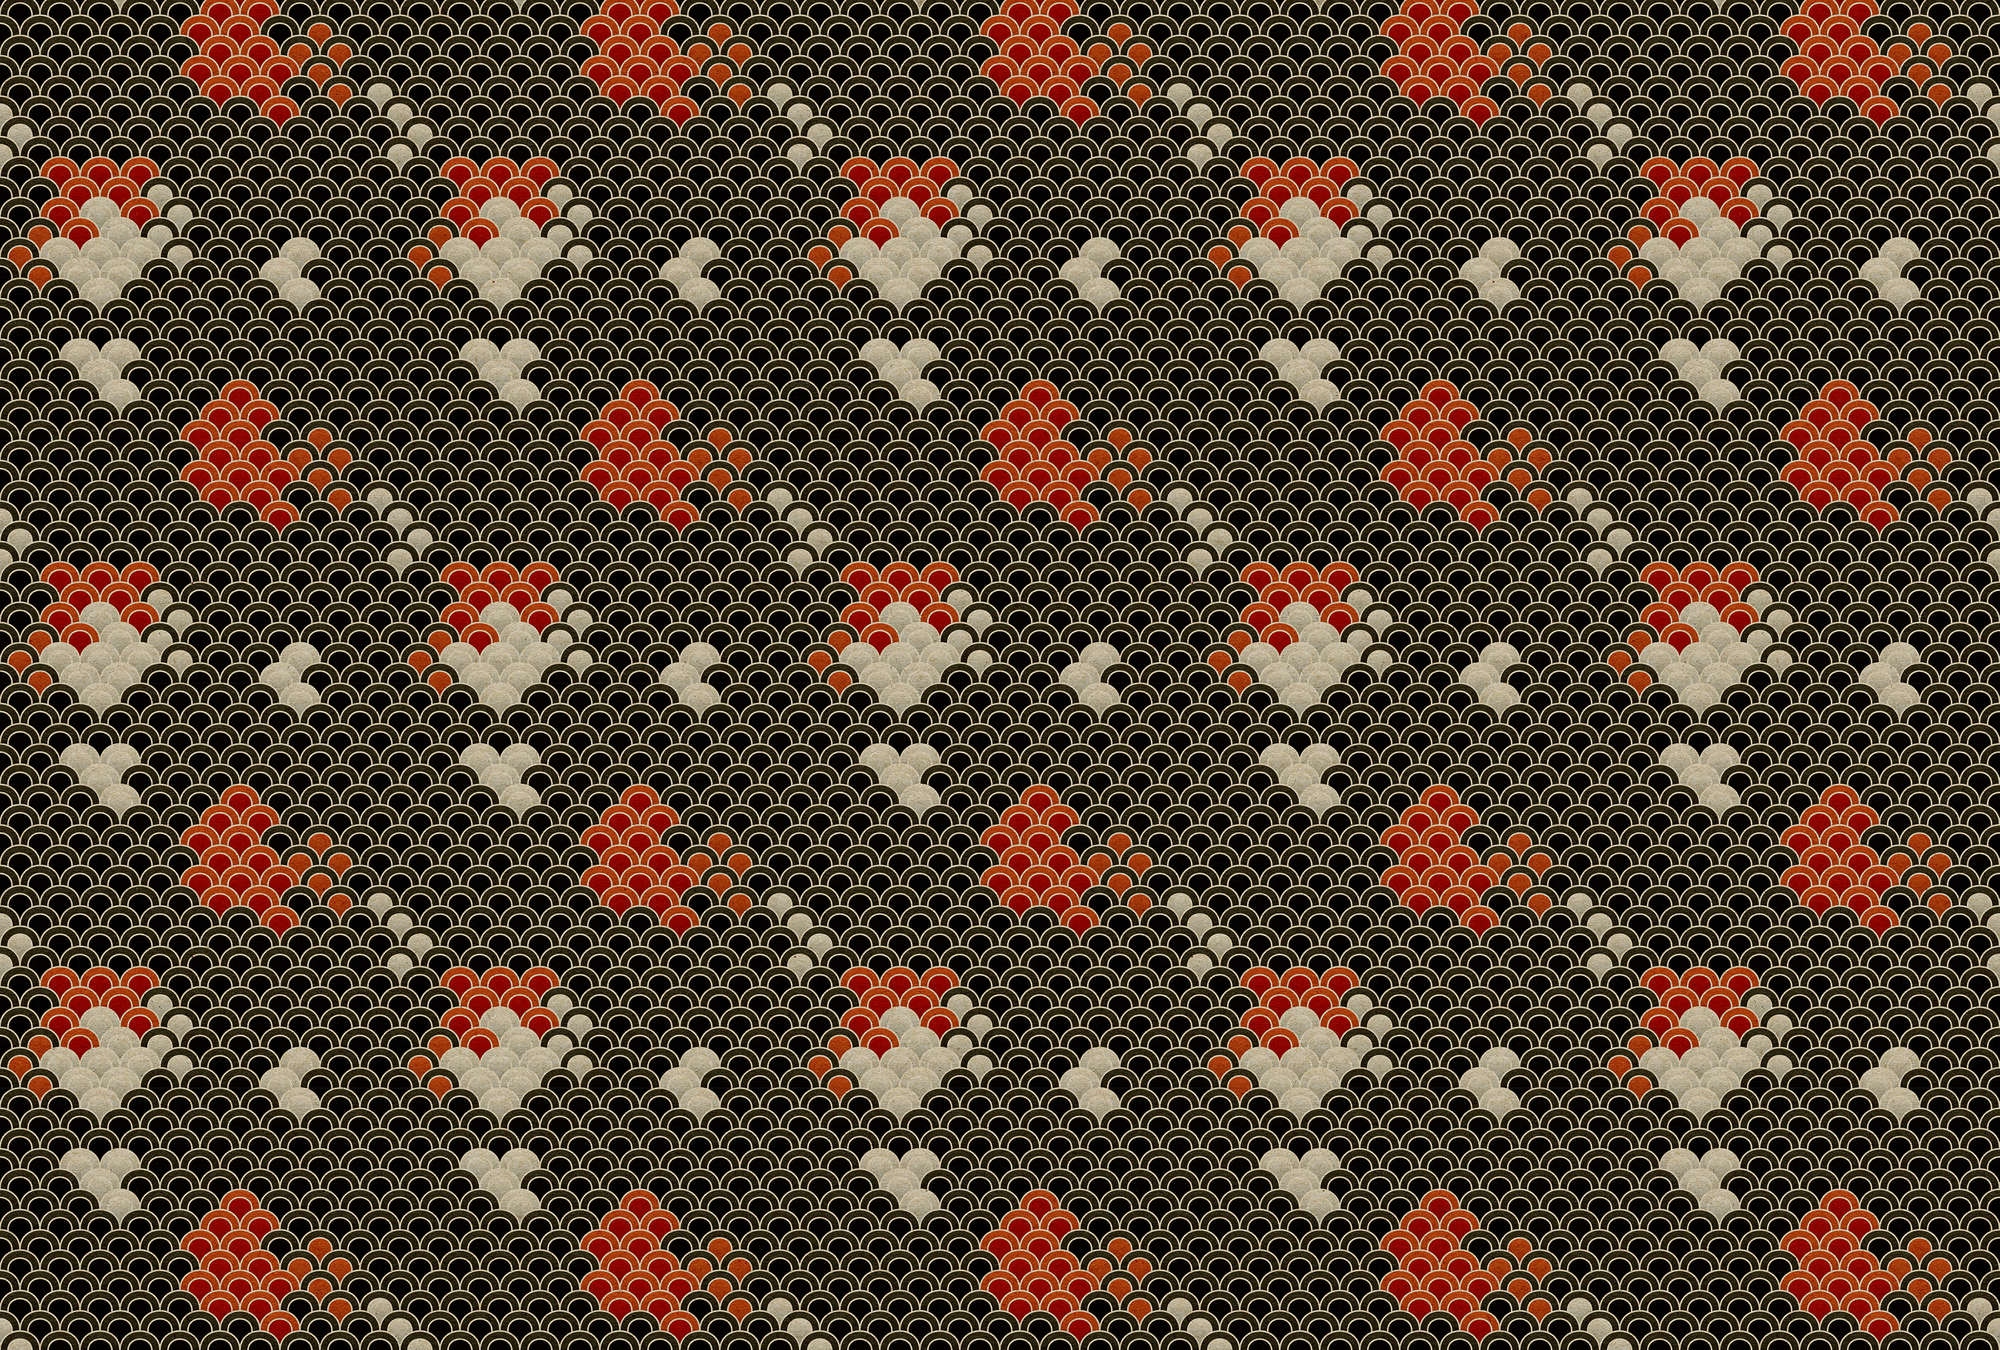             Koi 1 - Papel Pintado Estanque Koi Oscuro - Estructura de Cartón - Beige, Rojo | Estructura no tejida
        